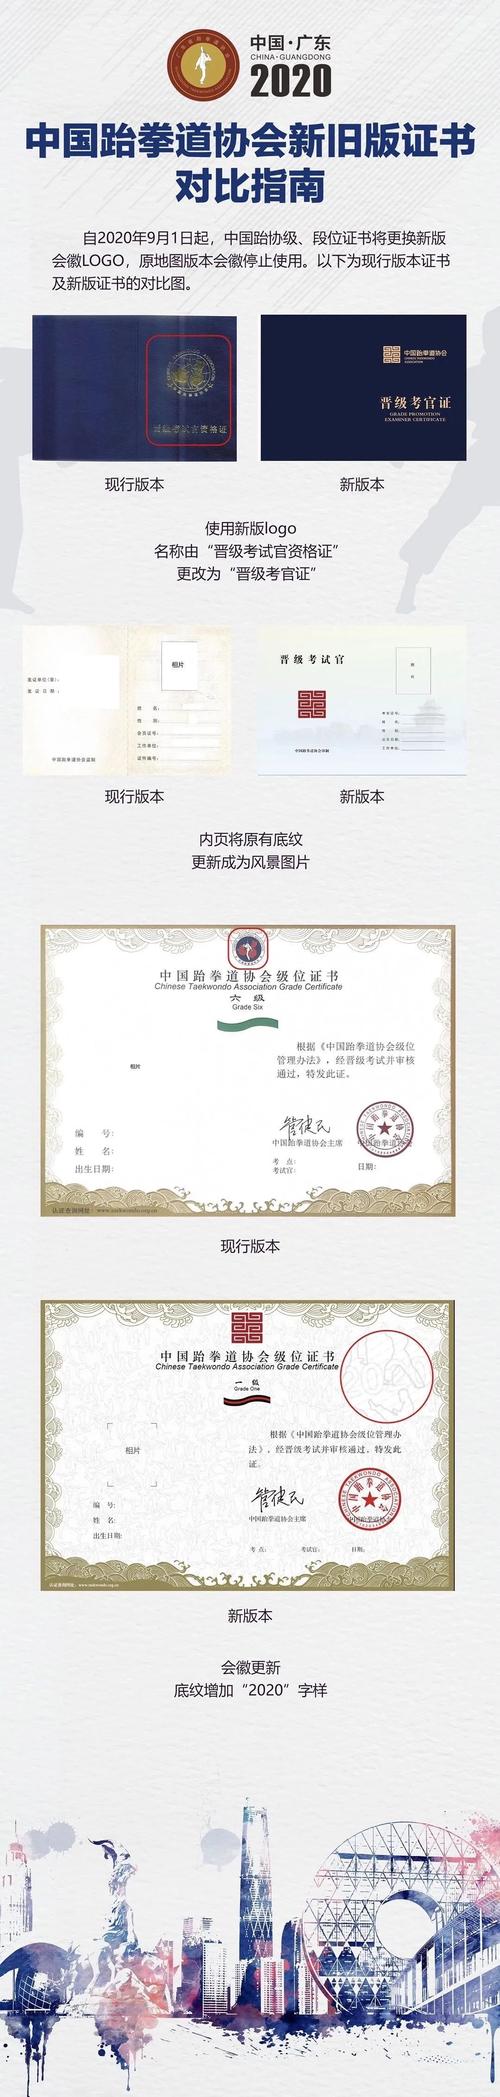 中国跆拳道协会新旧版证书对比指南